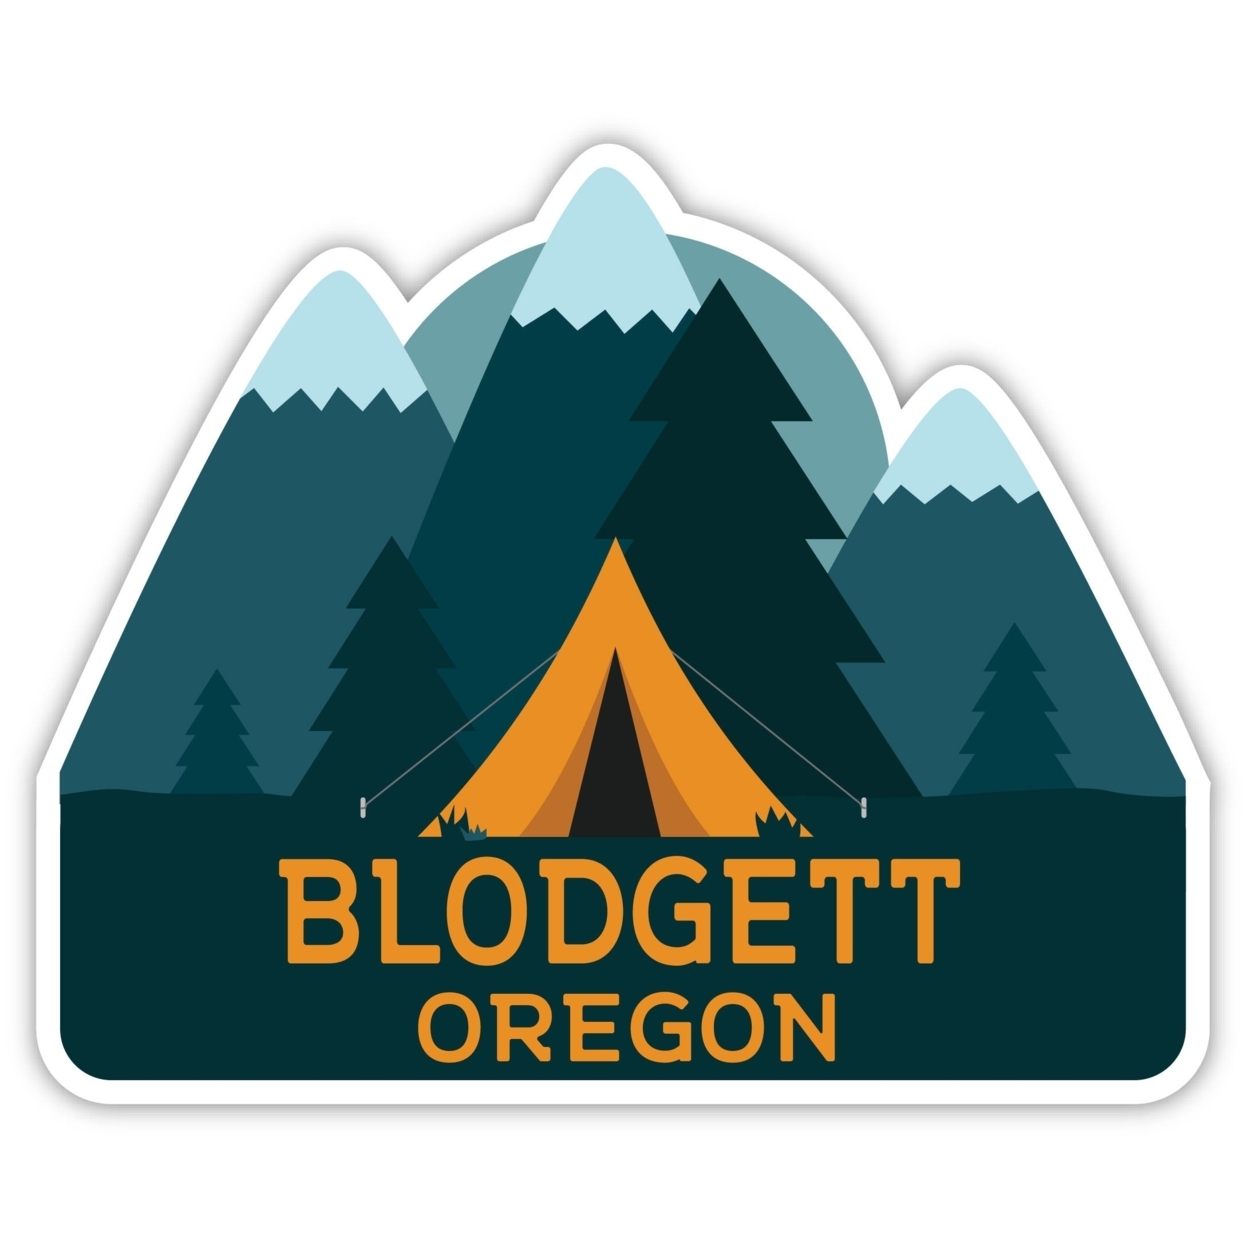 Blodgett Oregon Souvenir Decorative Stickers (Choose Theme And Size) - Single Unit, 4-Inch, Tent